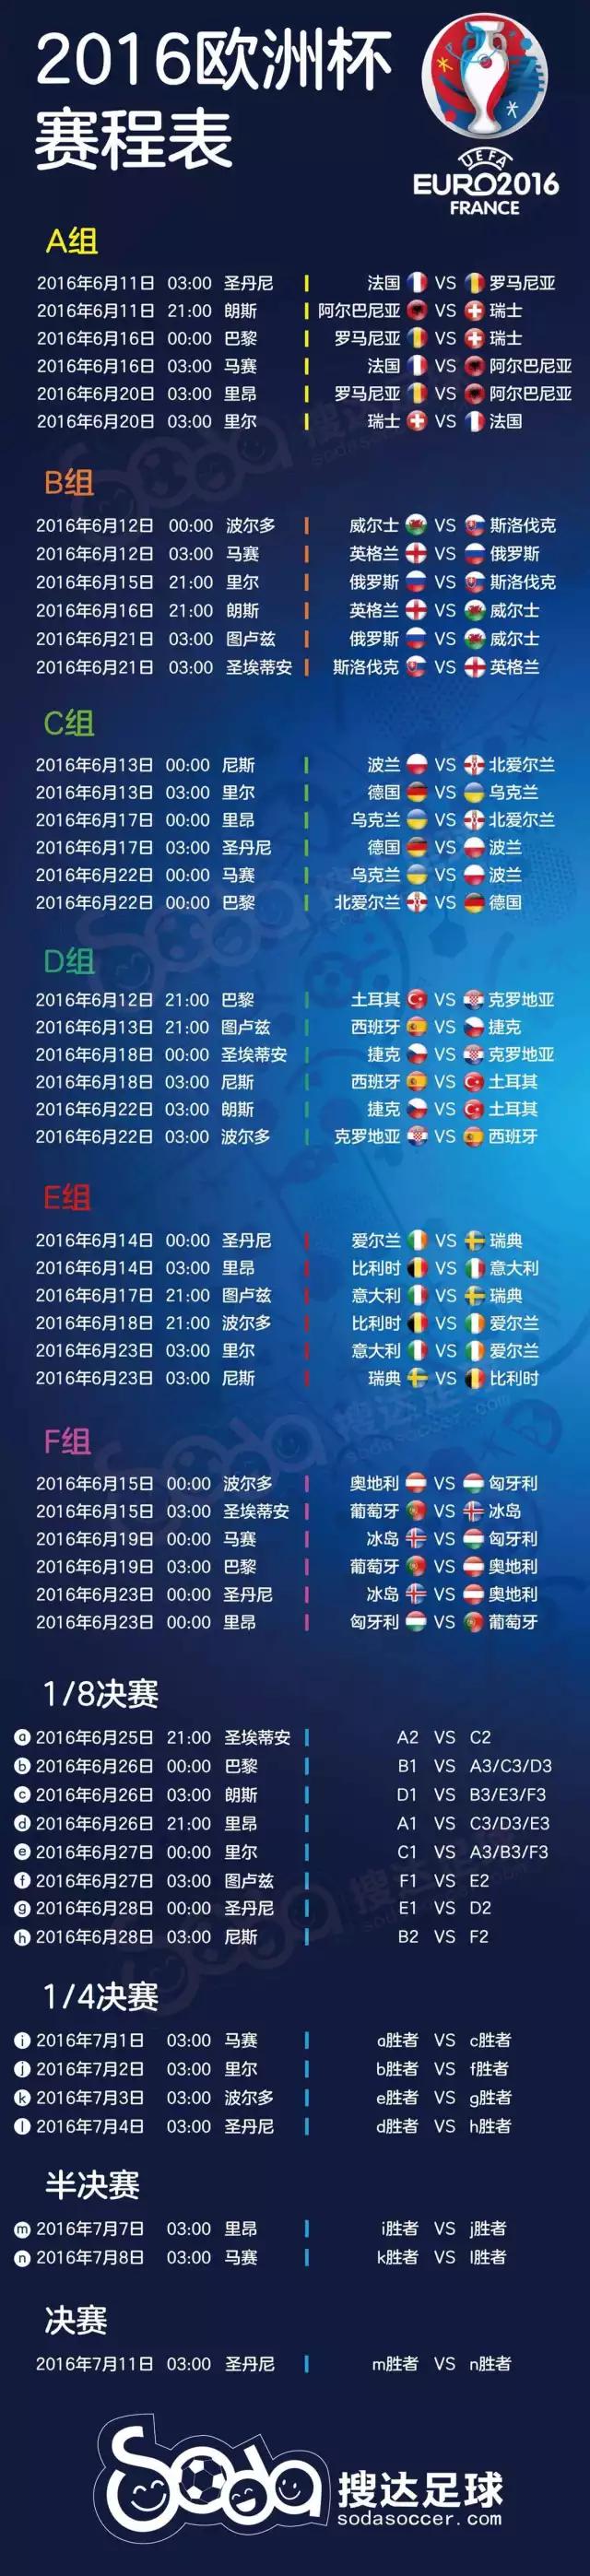 最全2016欧洲杯终极版赛程表！自带转播和完整版解说员信息！